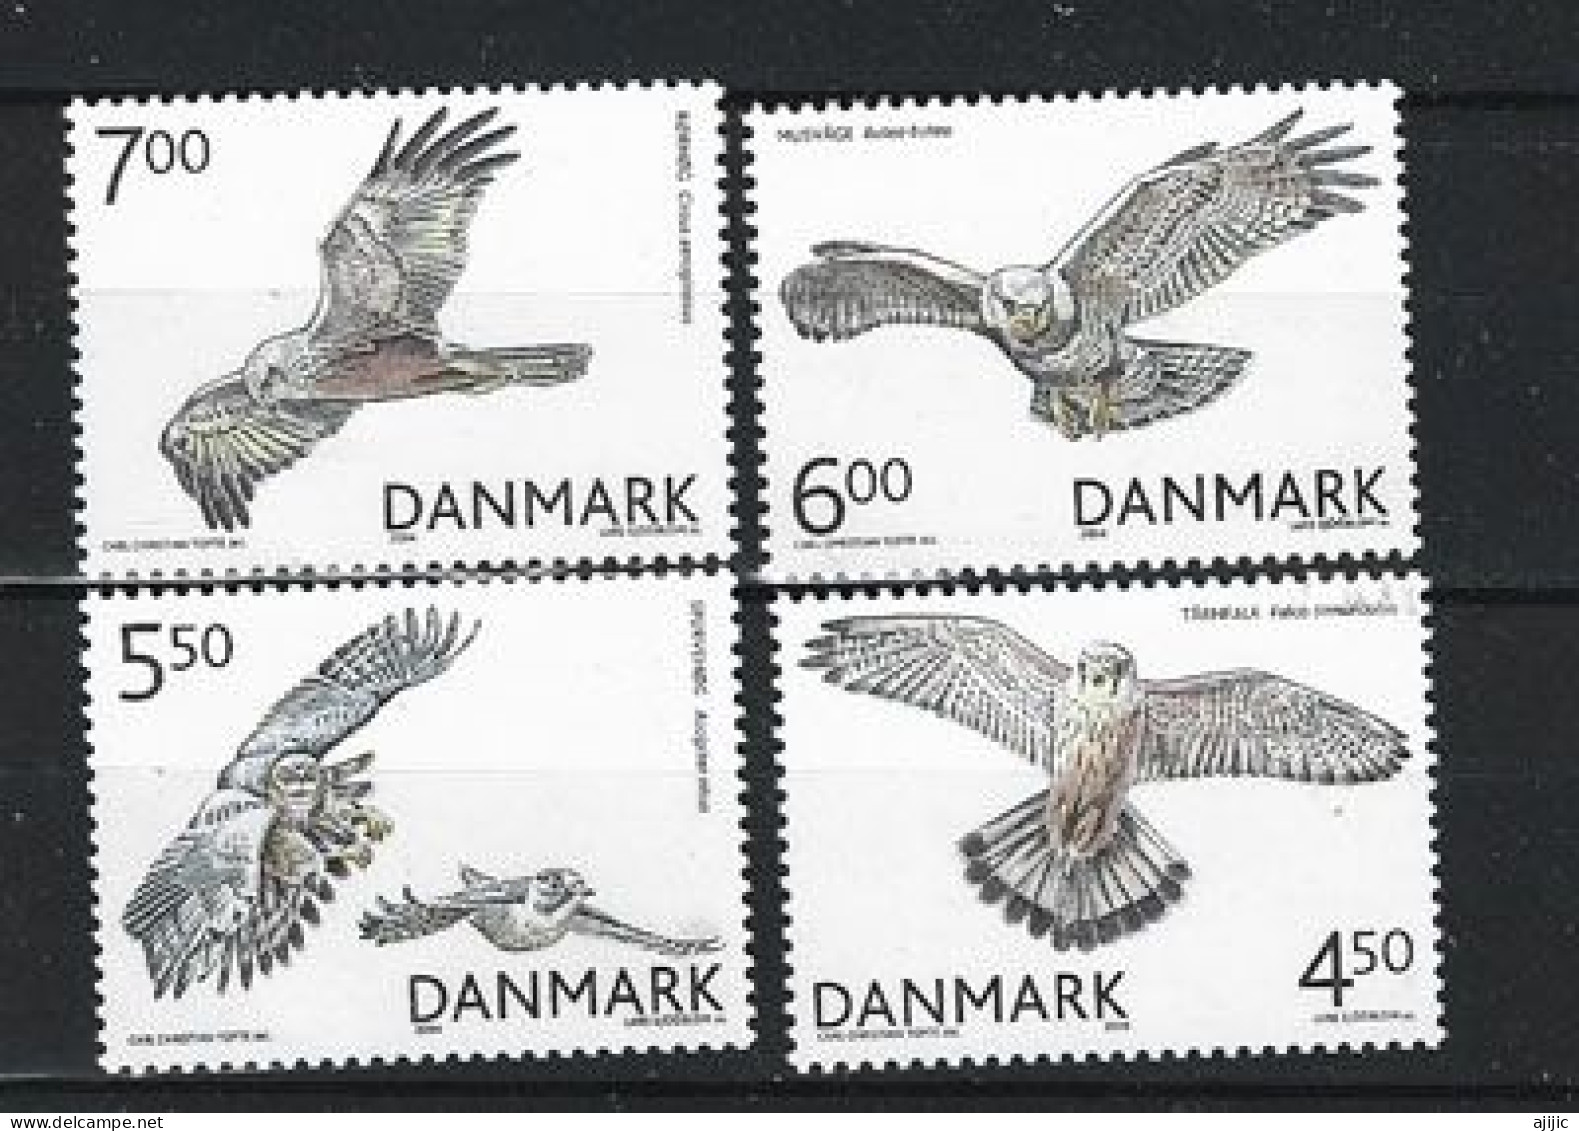 DANEMARK. Oiseaux De Proie / Rapaces Du Danemark. Série Complète 4 Timbres Neufs **  Année 2004 - Nuovi